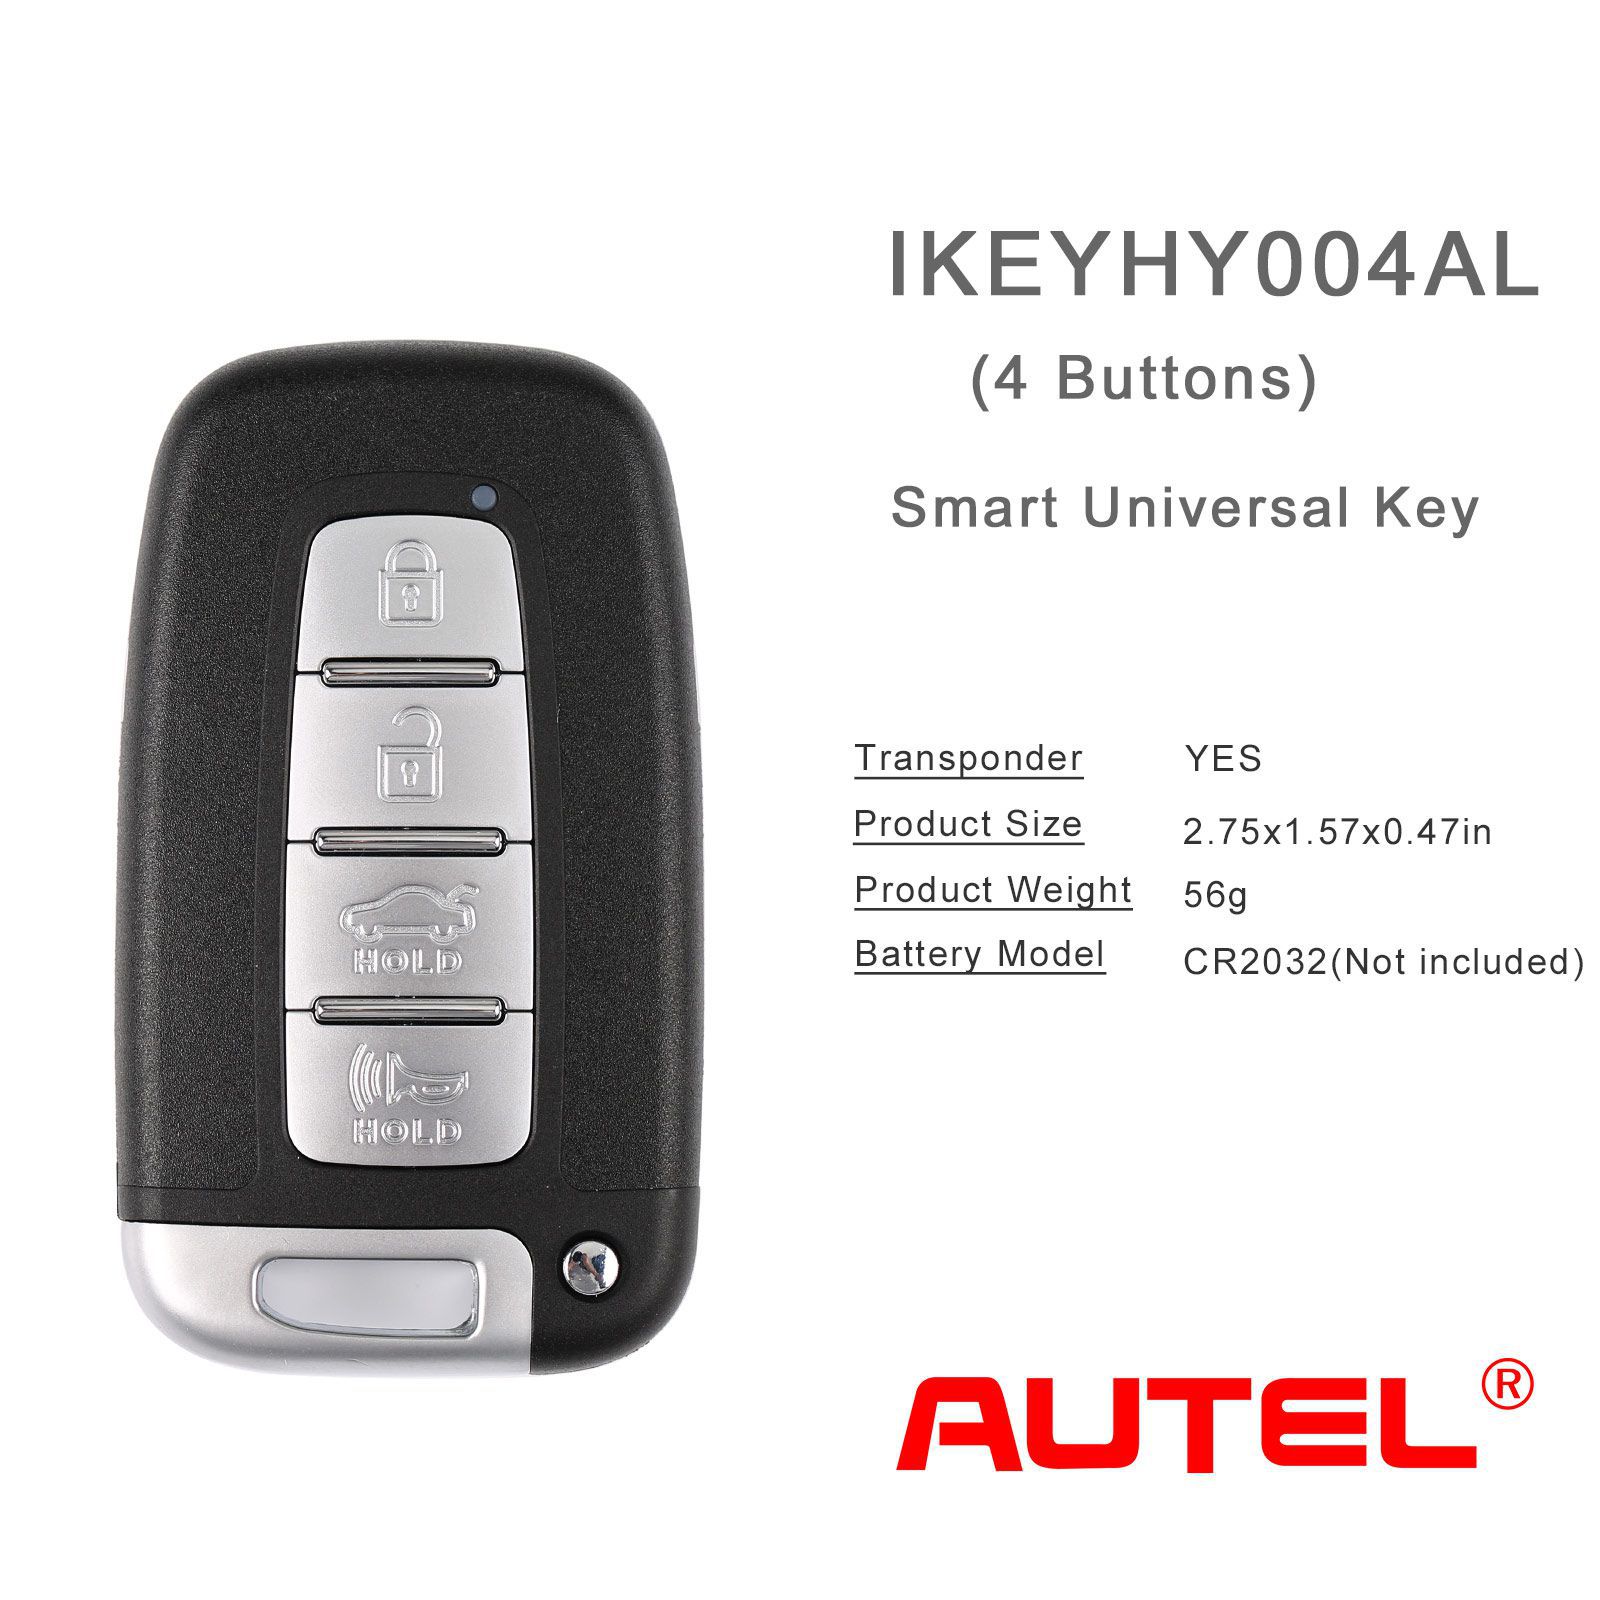 Autel ikeyhy004al moderne 4 boutons clé intelligente universelle 5pcs / lot